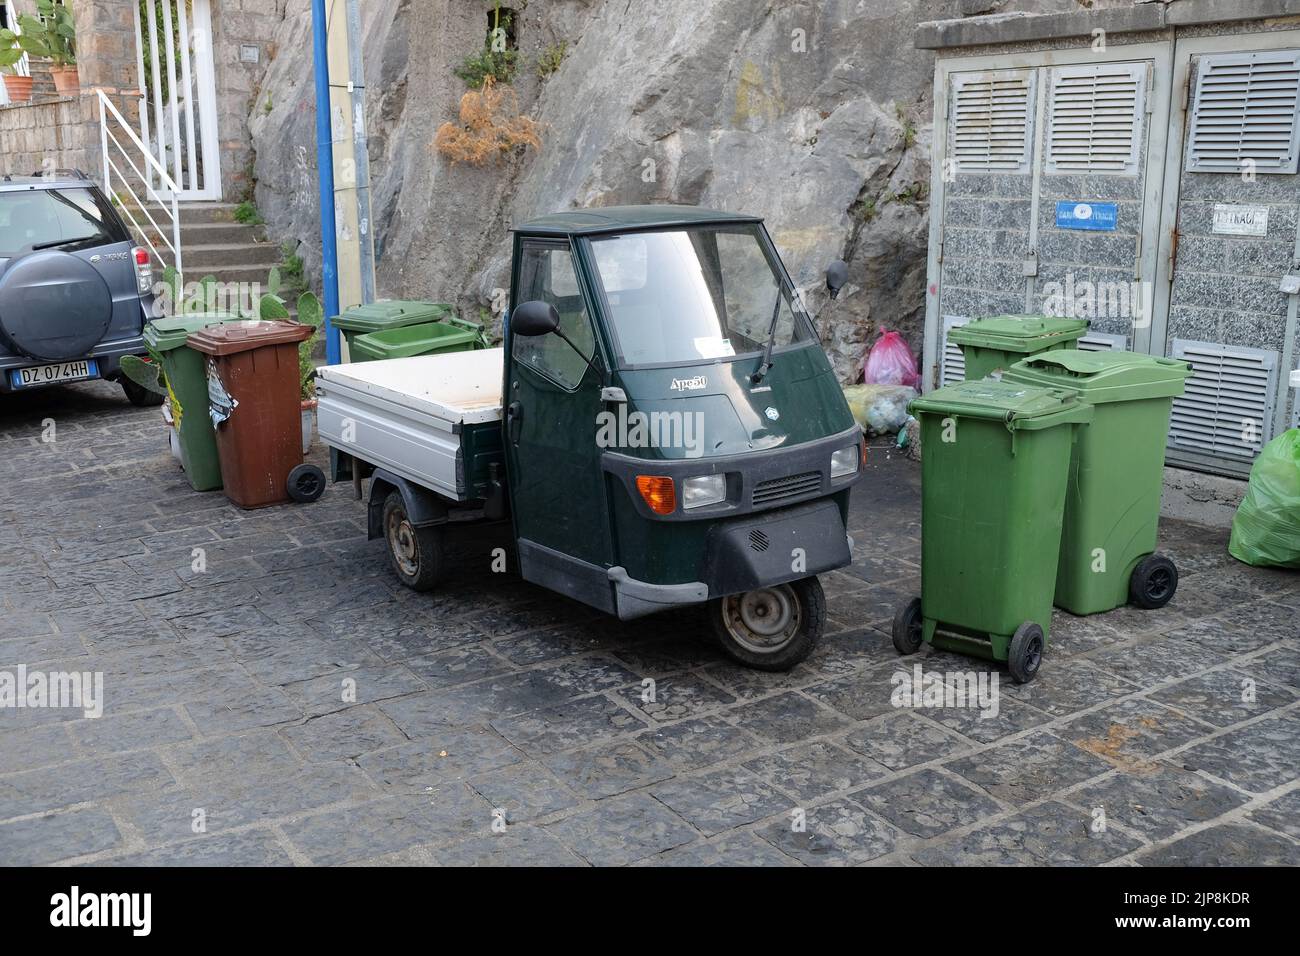 Un veicolo commerciale leggero Ape50 prodotto dalla casa automobilistica italiana Piaggio parcheggiato tra i cassonetti a Sorrento Italia. Foto Stock